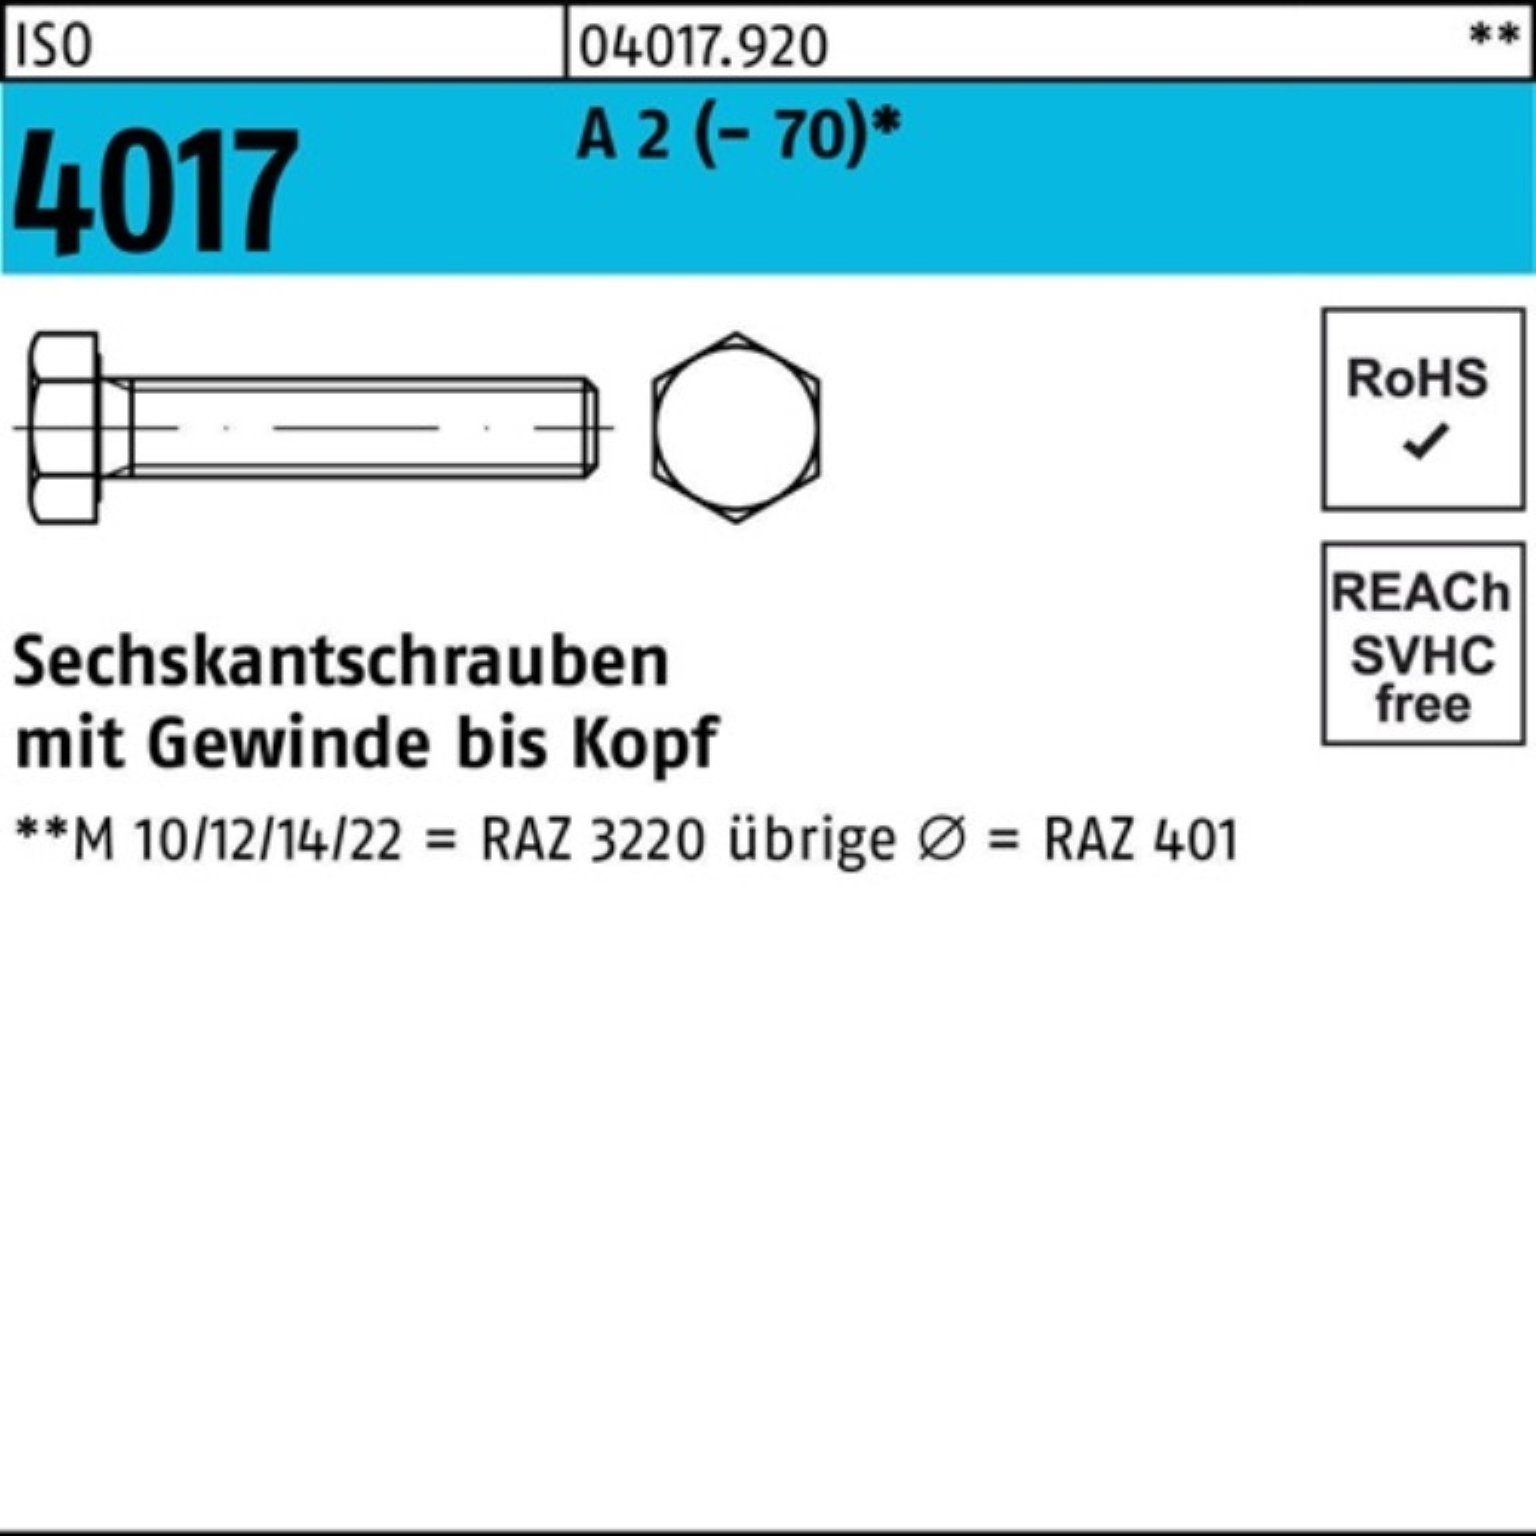 Bufab Sechskantschraube 100er Pack Sechskantschraube ISO 4017 VG M16x 70 A 2 (70) 25 Stück